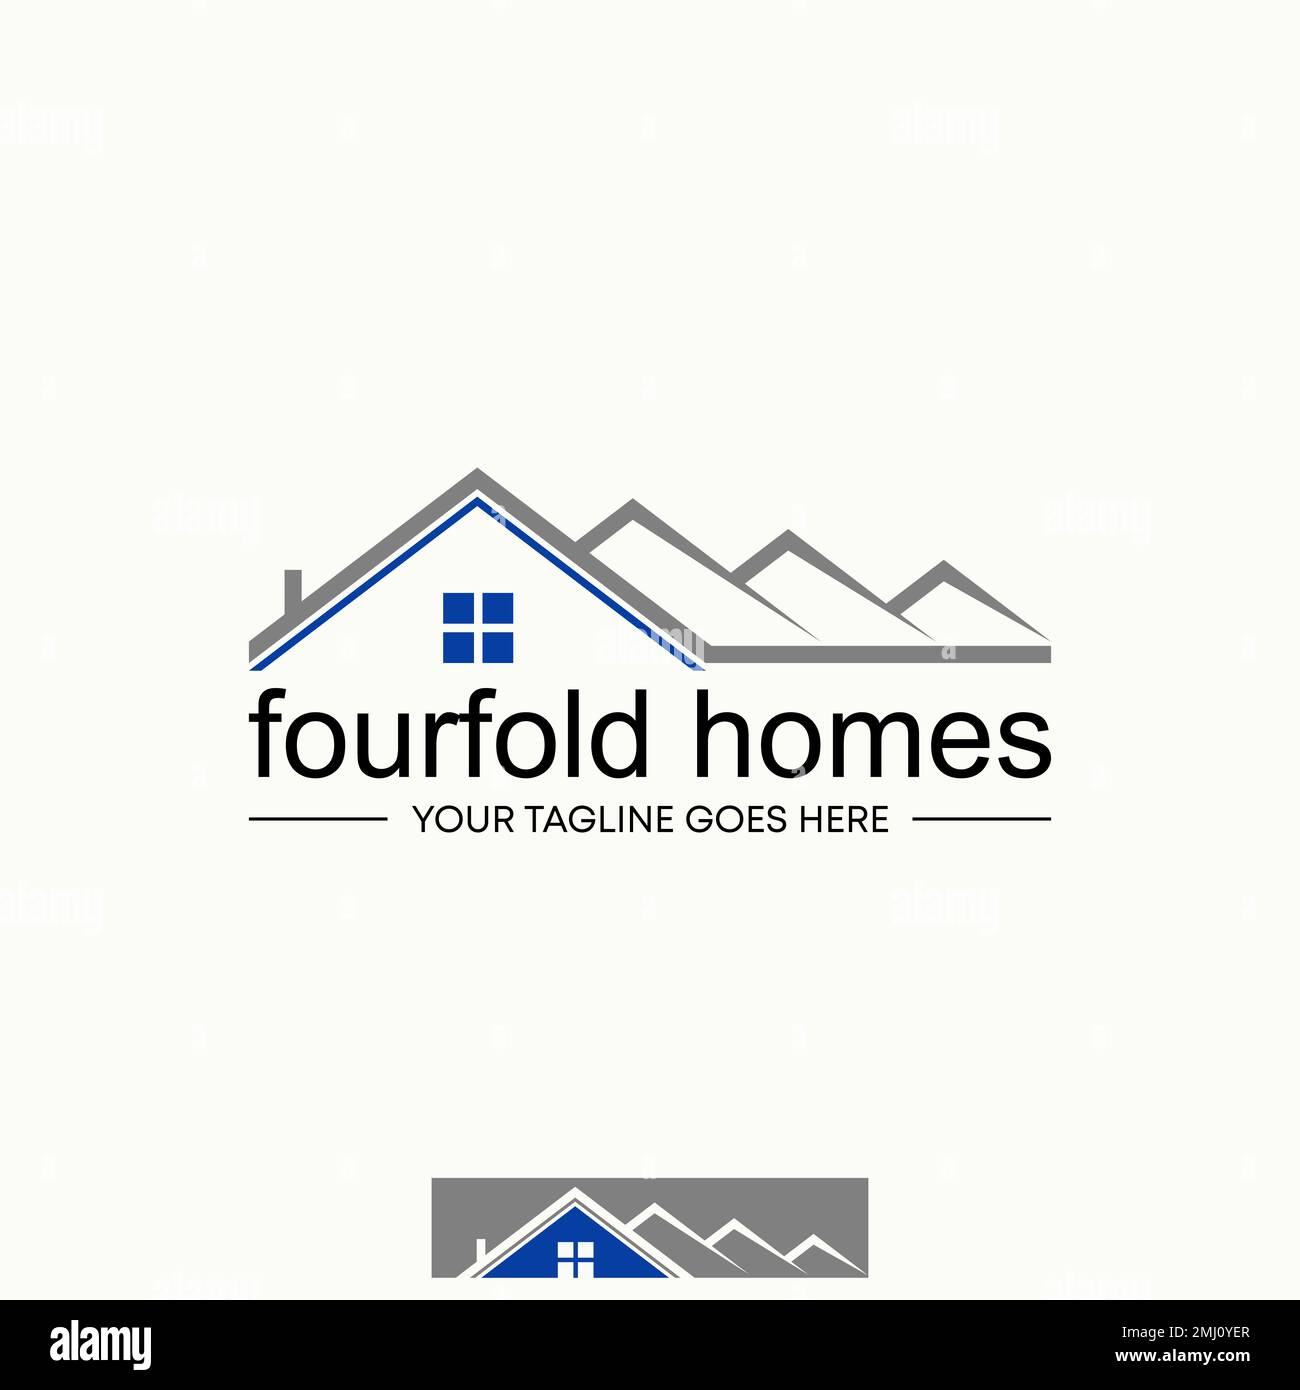 Einfache und einzigartige Formlinie vierfach faltbare Dachhäuser Bildgrafik Symbol Logo Design abstraktes Konzept Vektormaterial. Bezieht sich auf Eigentum oder Leben Stock Vektor